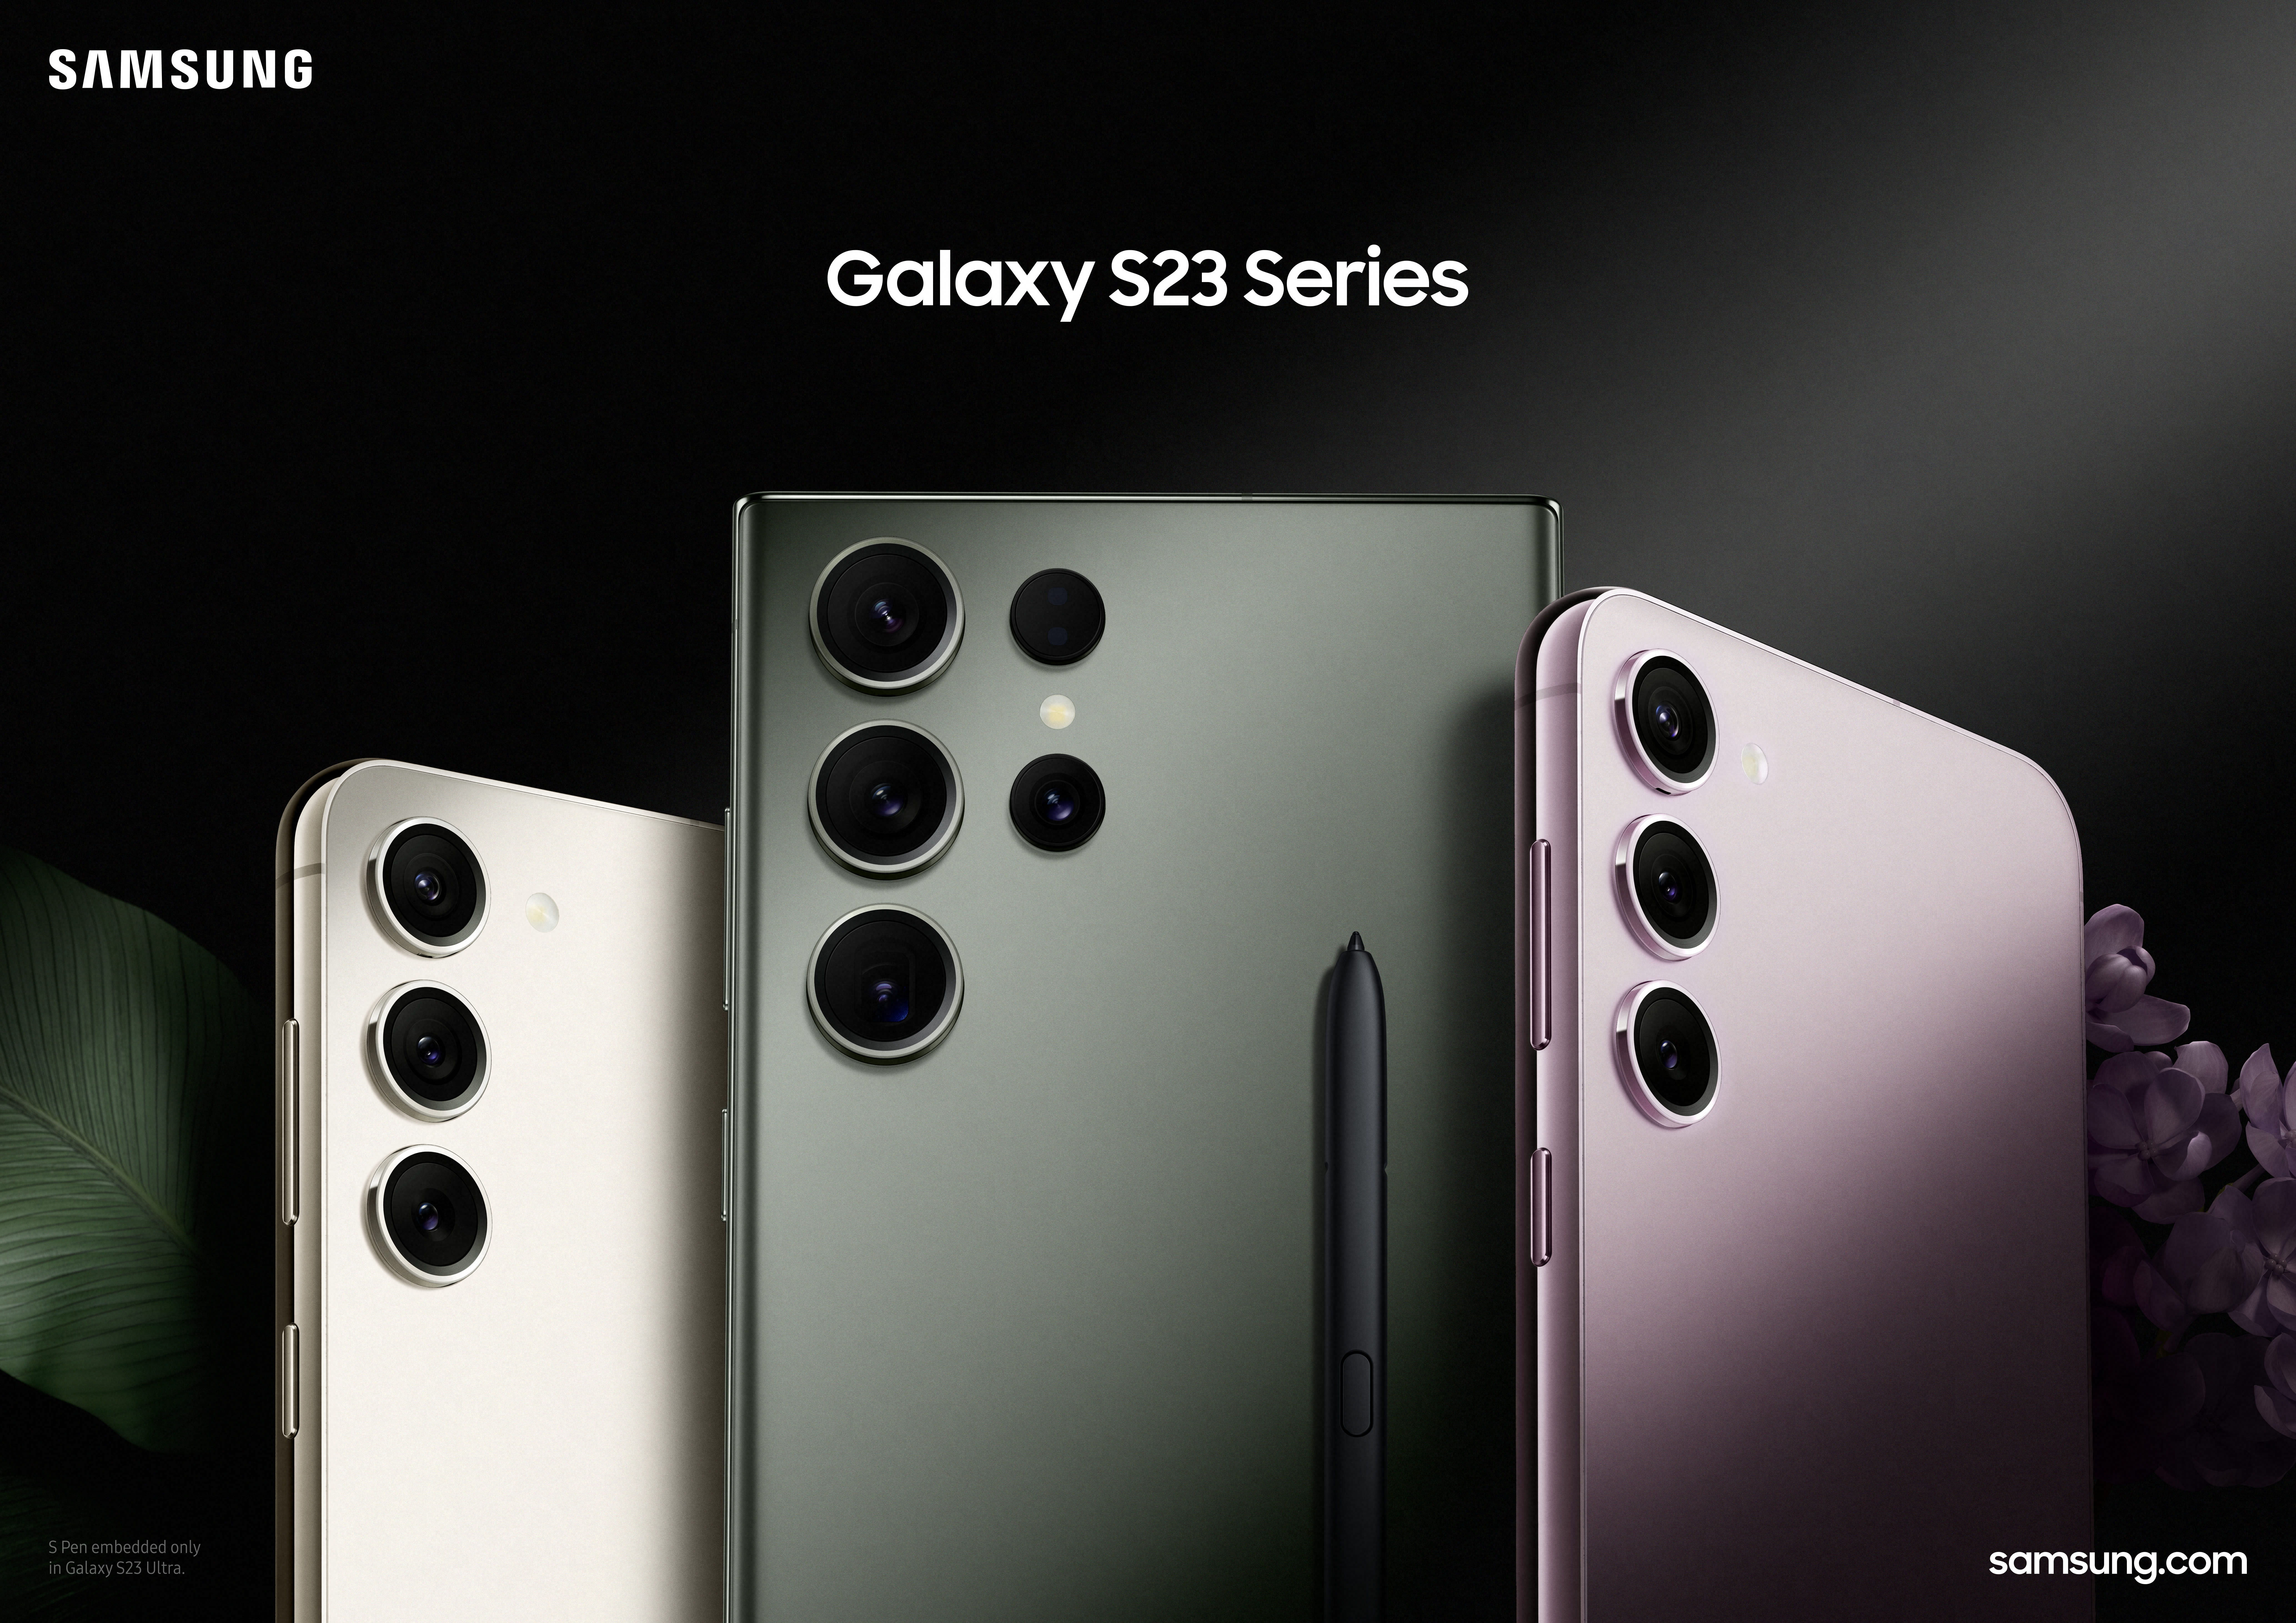 La serie Galaxy S23 se presentó oficialmente, junto con los nuevos computadores de la compañía.